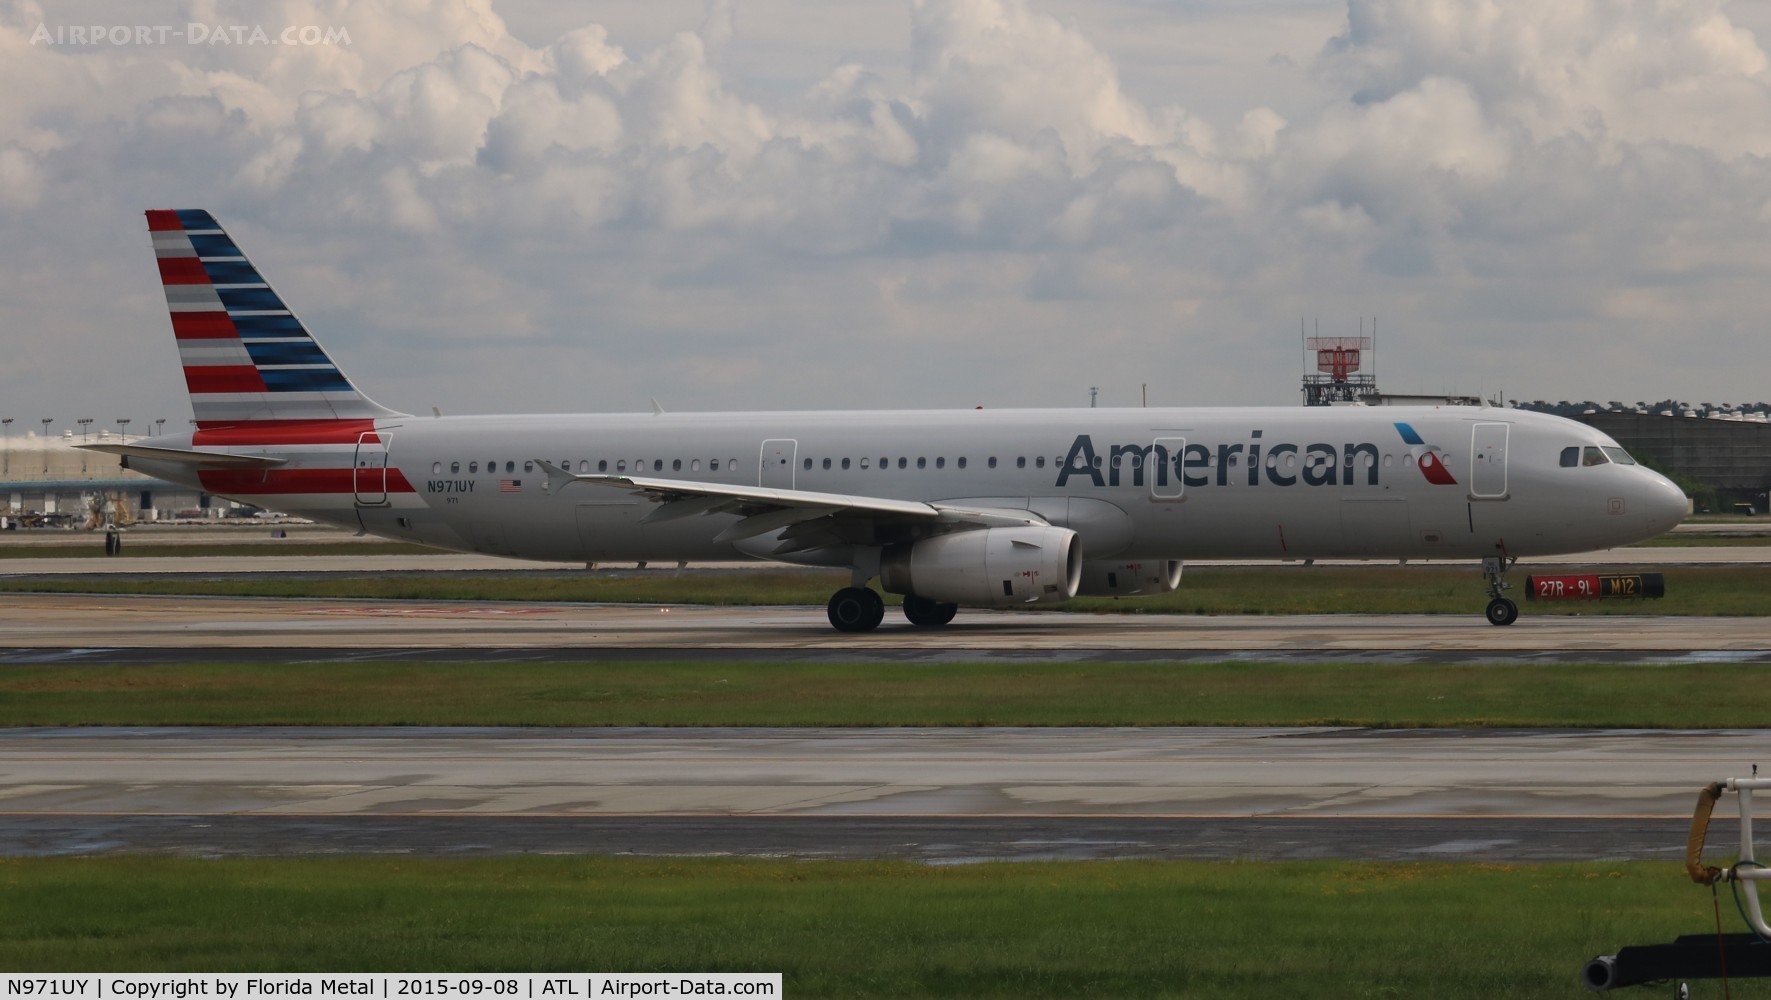 N971UY, 2014 Airbus A321-231 C/N 6249, American